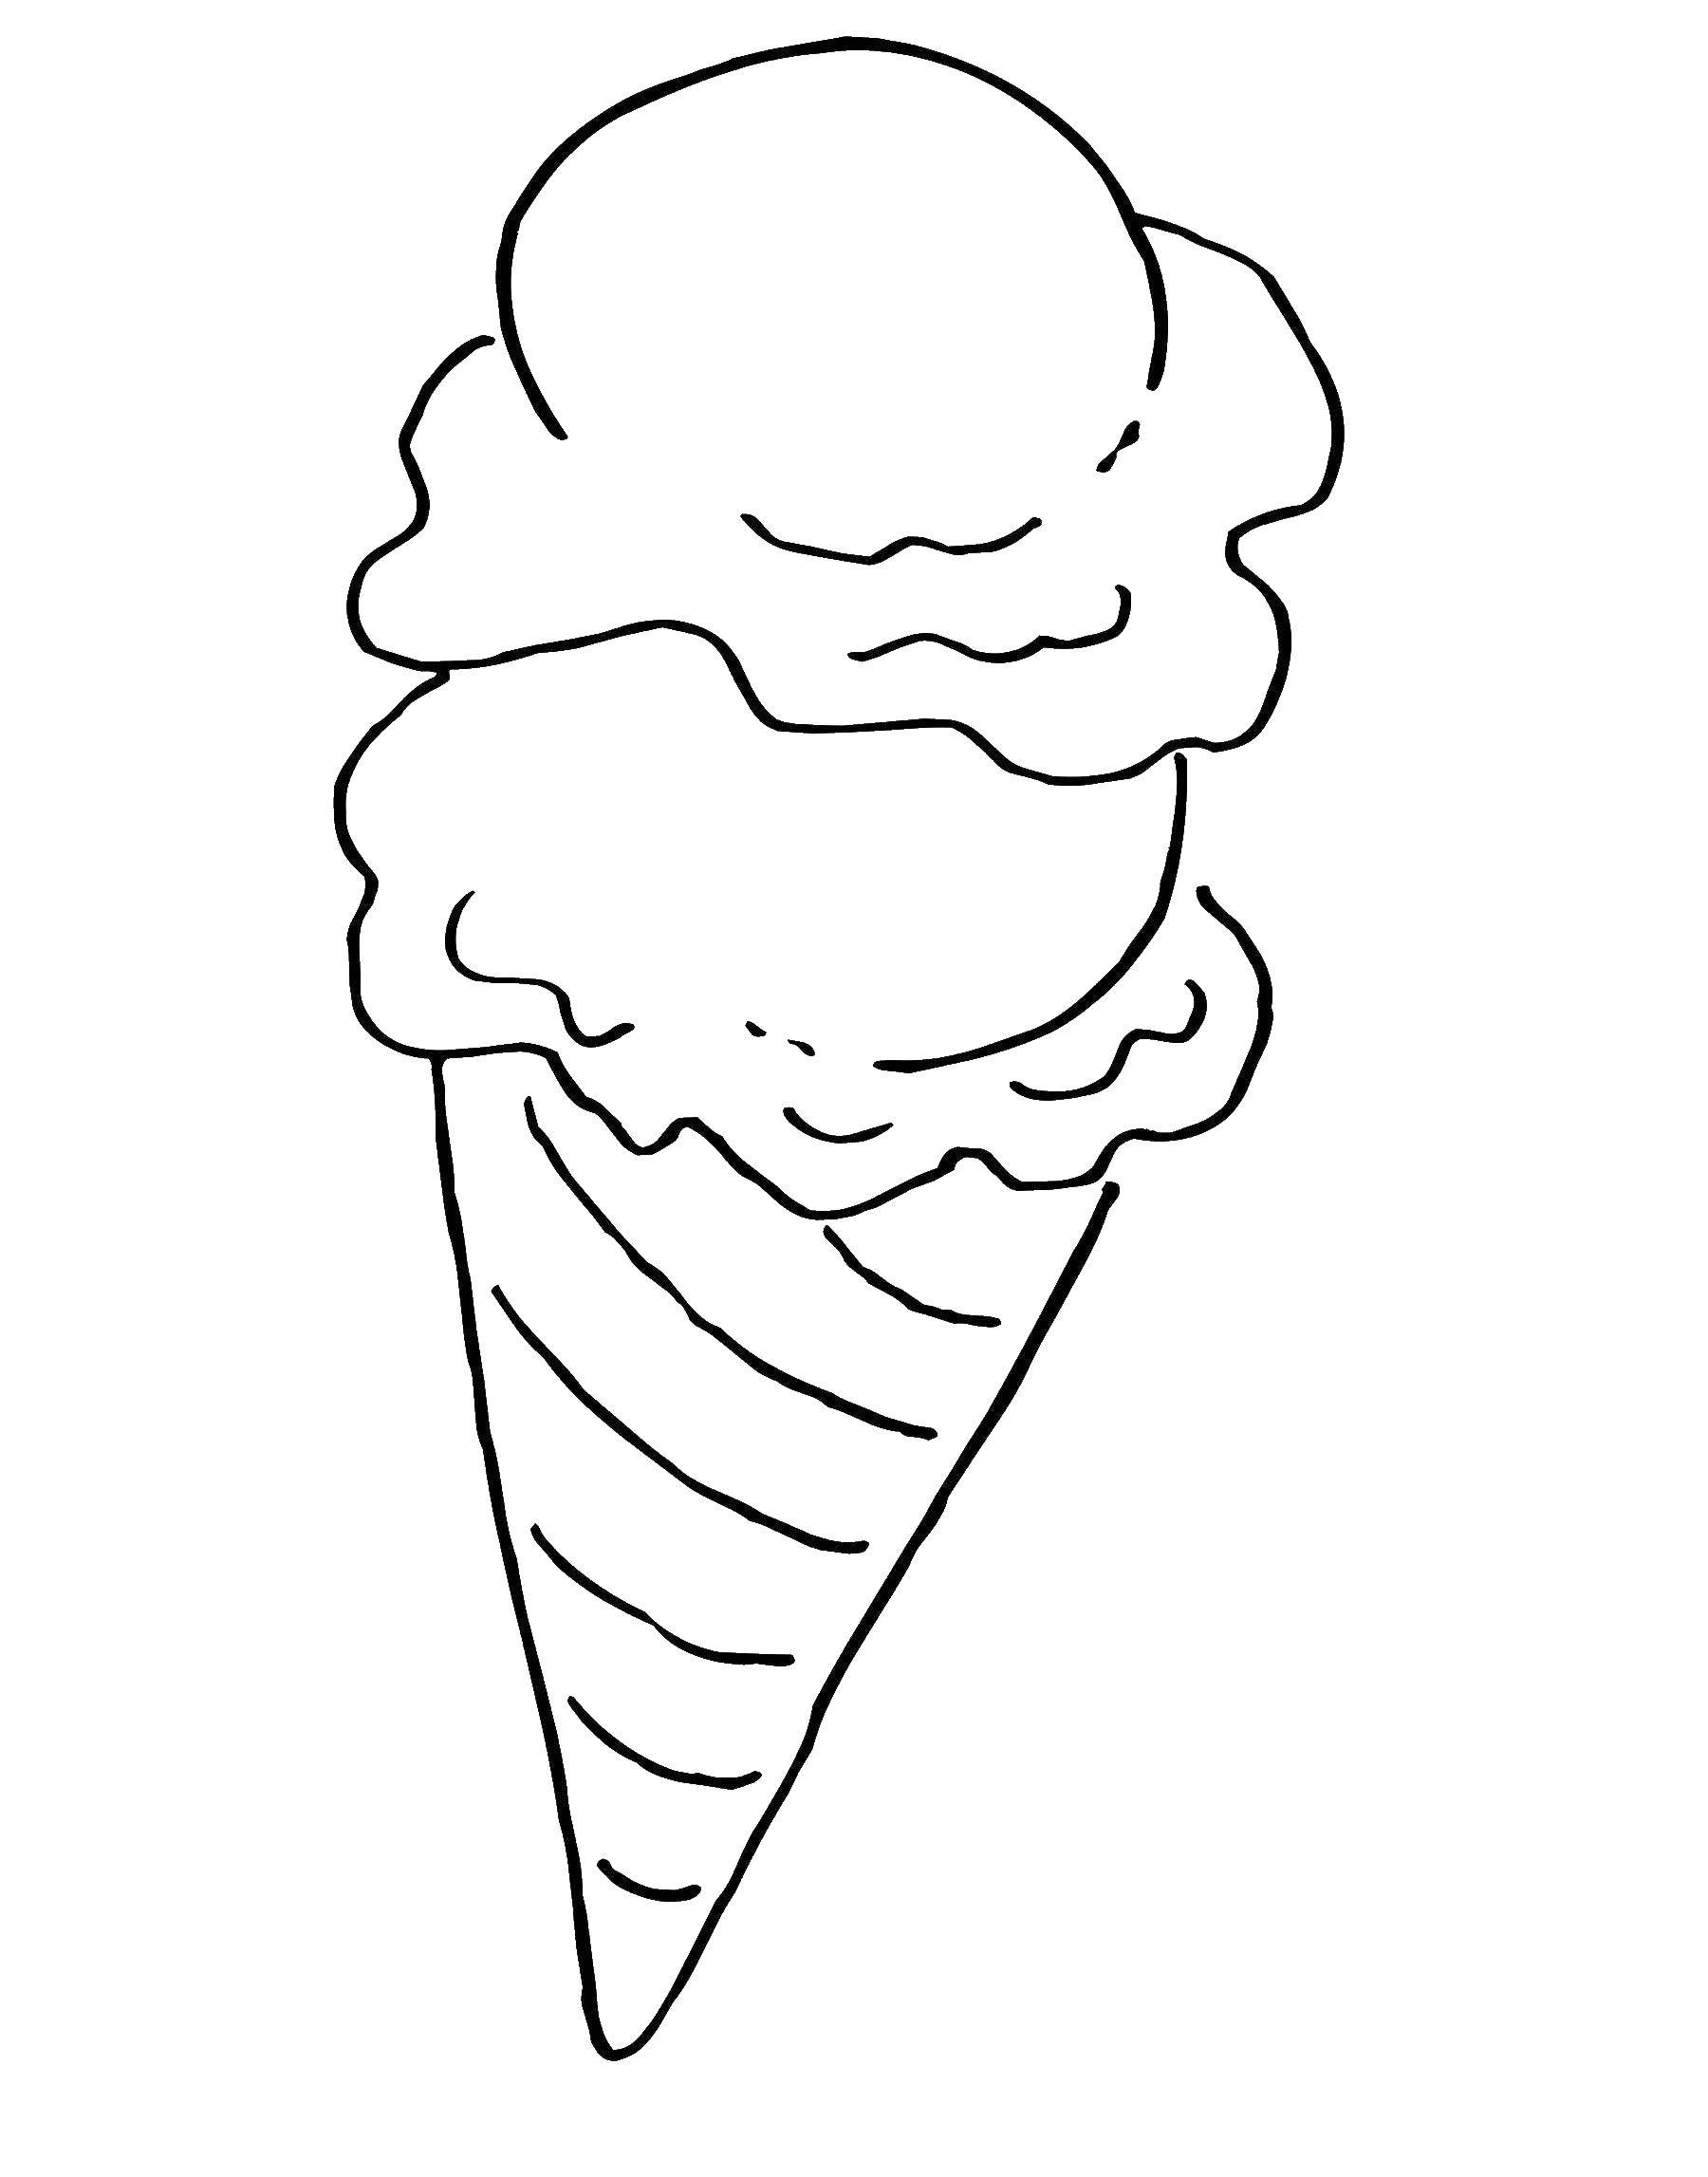 Раскраска мороженки. Раскраска мороженое. Раскраска МО РО же но е. Мороженое раскраска для детей. Раскраска мороженое рожок.